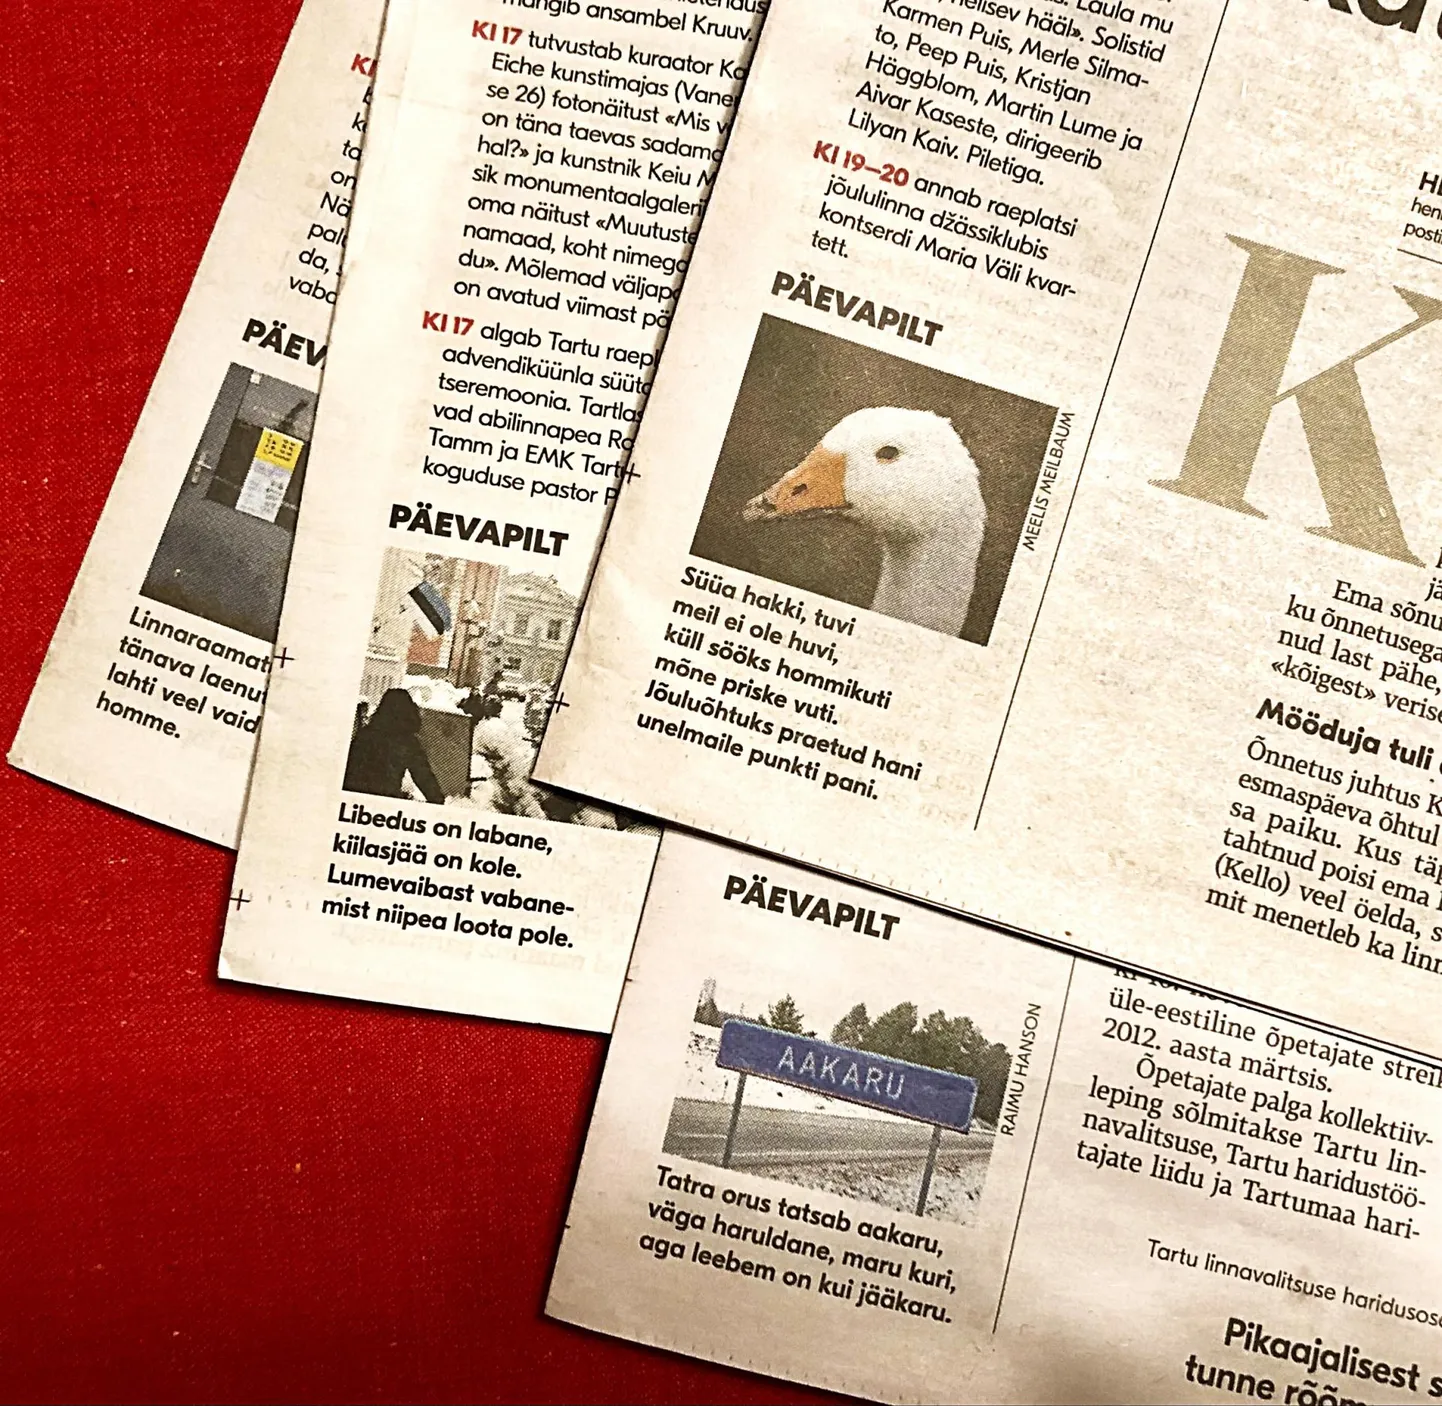 Tartu Postimehe rubriik «Täna», mille lõpus on alarubriik «Päevapilt», ilmub esileheküljel.